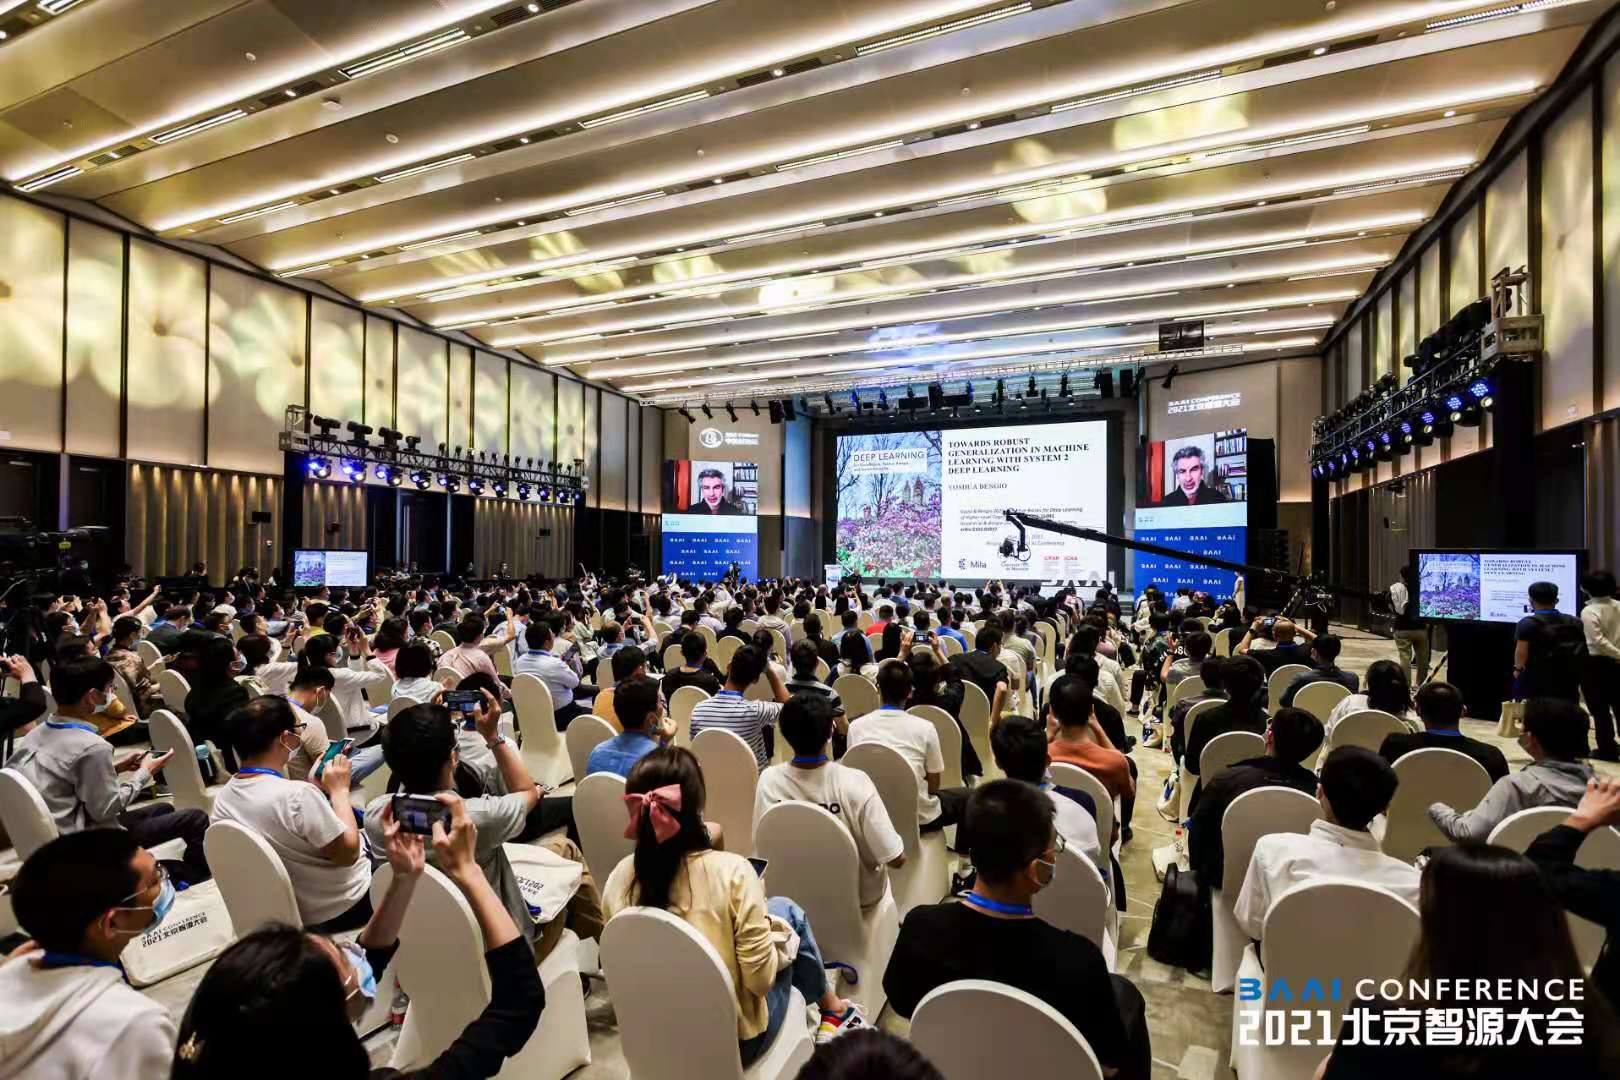 第三届北京智源大会开幕，全球最大智能模型“悟道2.0”重磅发布